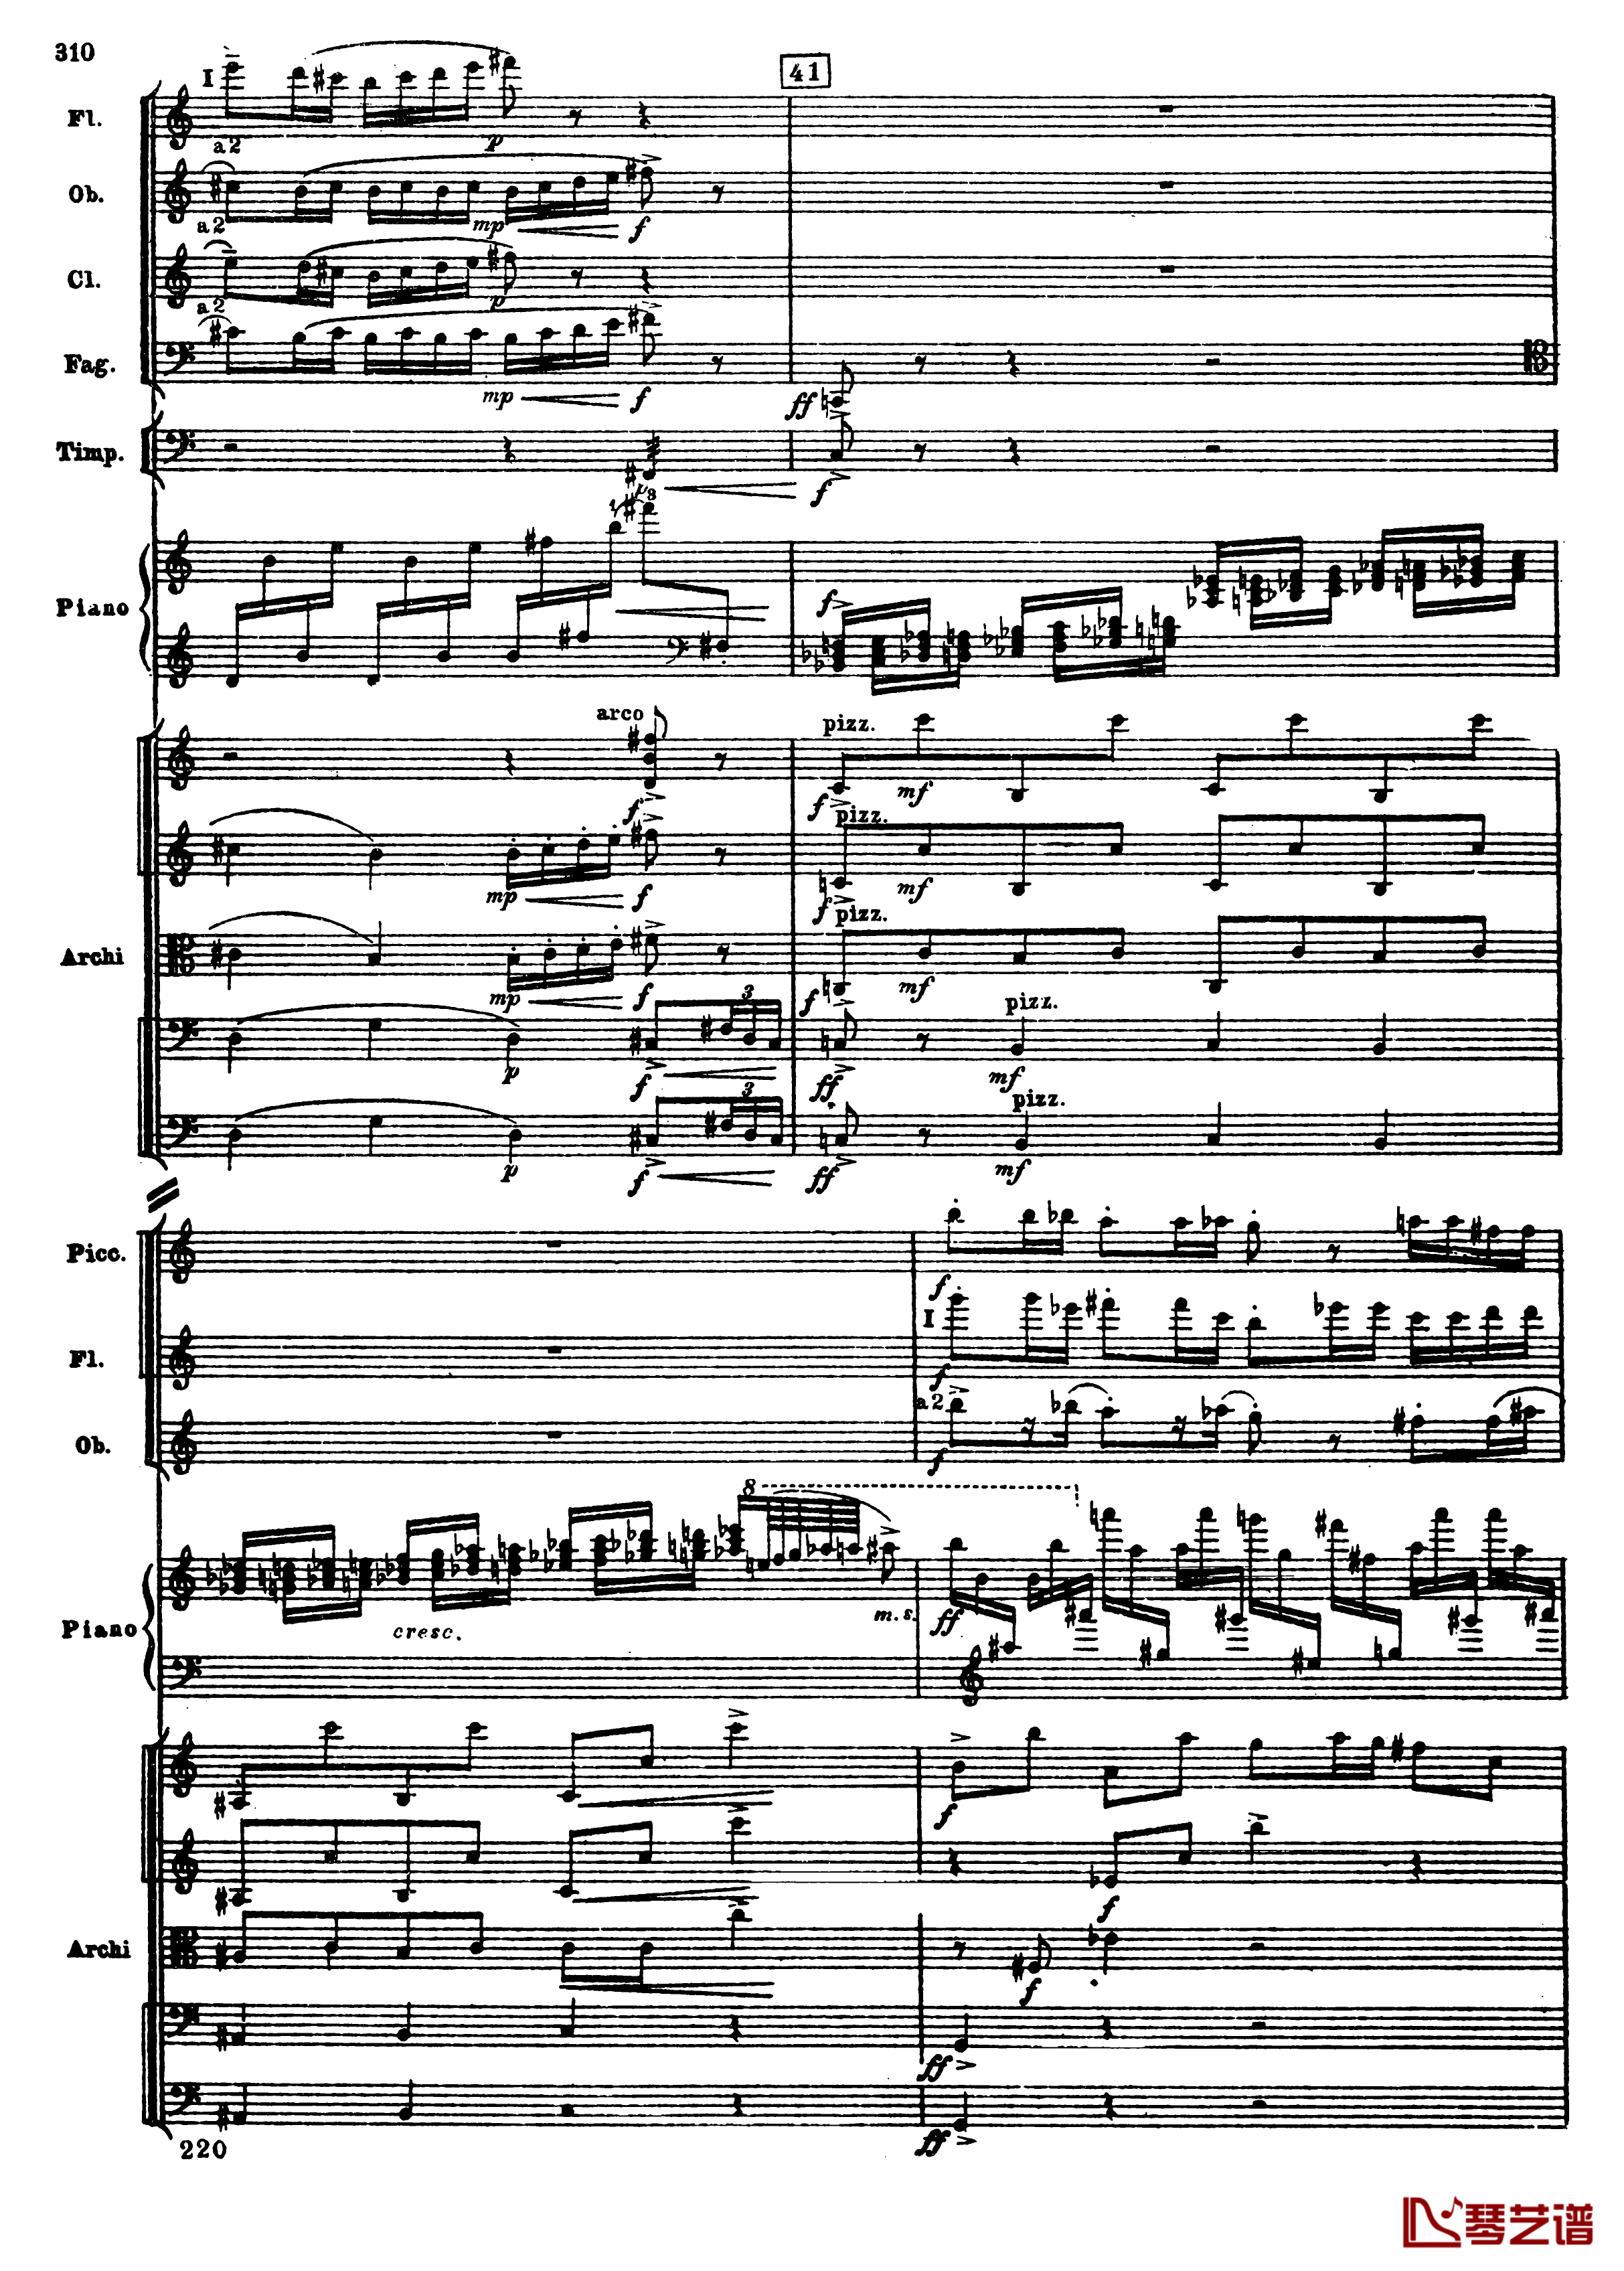 普罗科菲耶夫第三钢琴协奏曲钢琴谱-总谱-普罗科非耶夫42